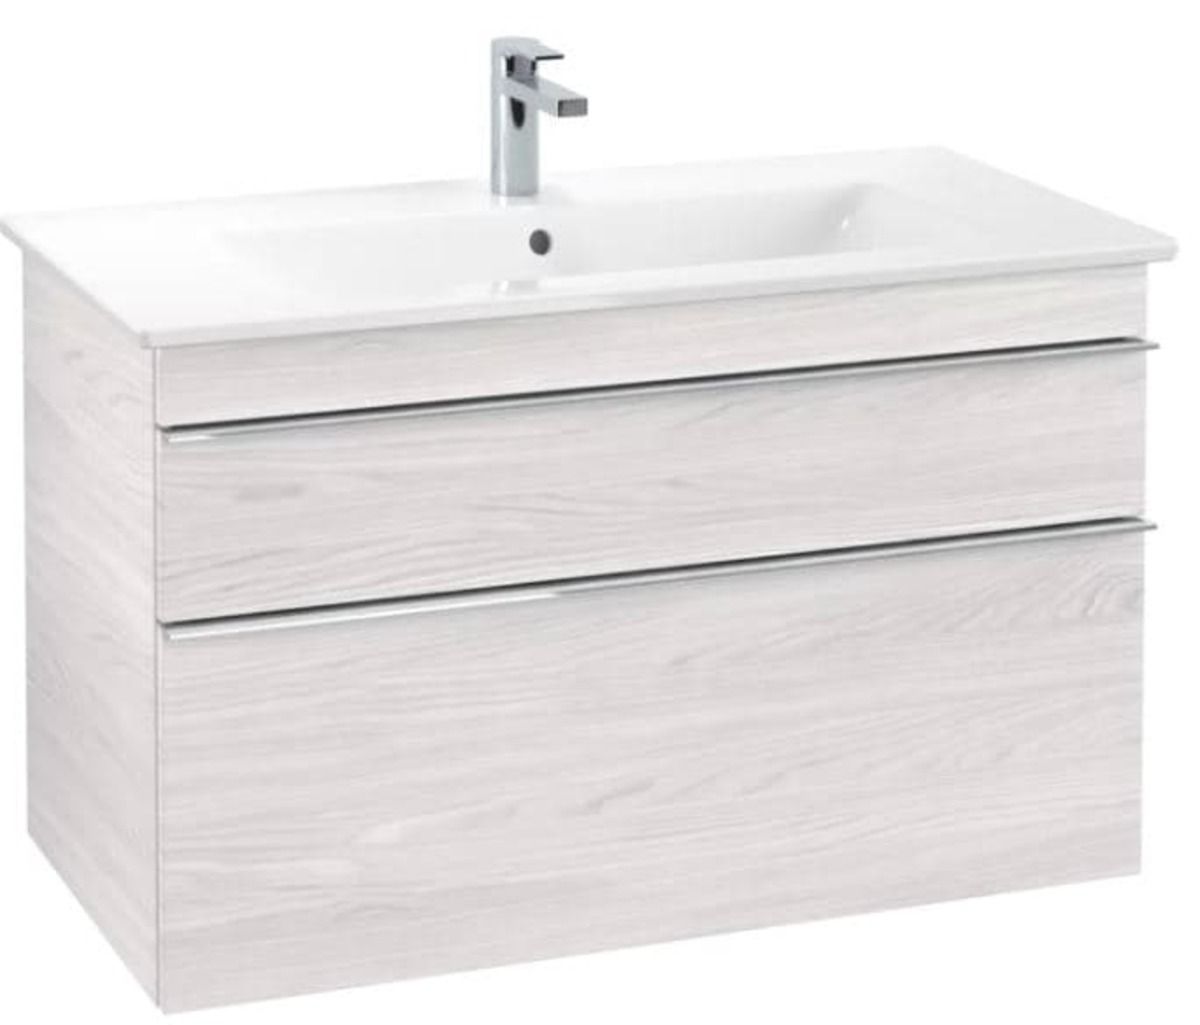 Koupelnová skříňka pod umyvadlo Villeroy&Boch Venticello 95x59x48 cm bílá A92601E8 - Siko - koupelny - kuchyně